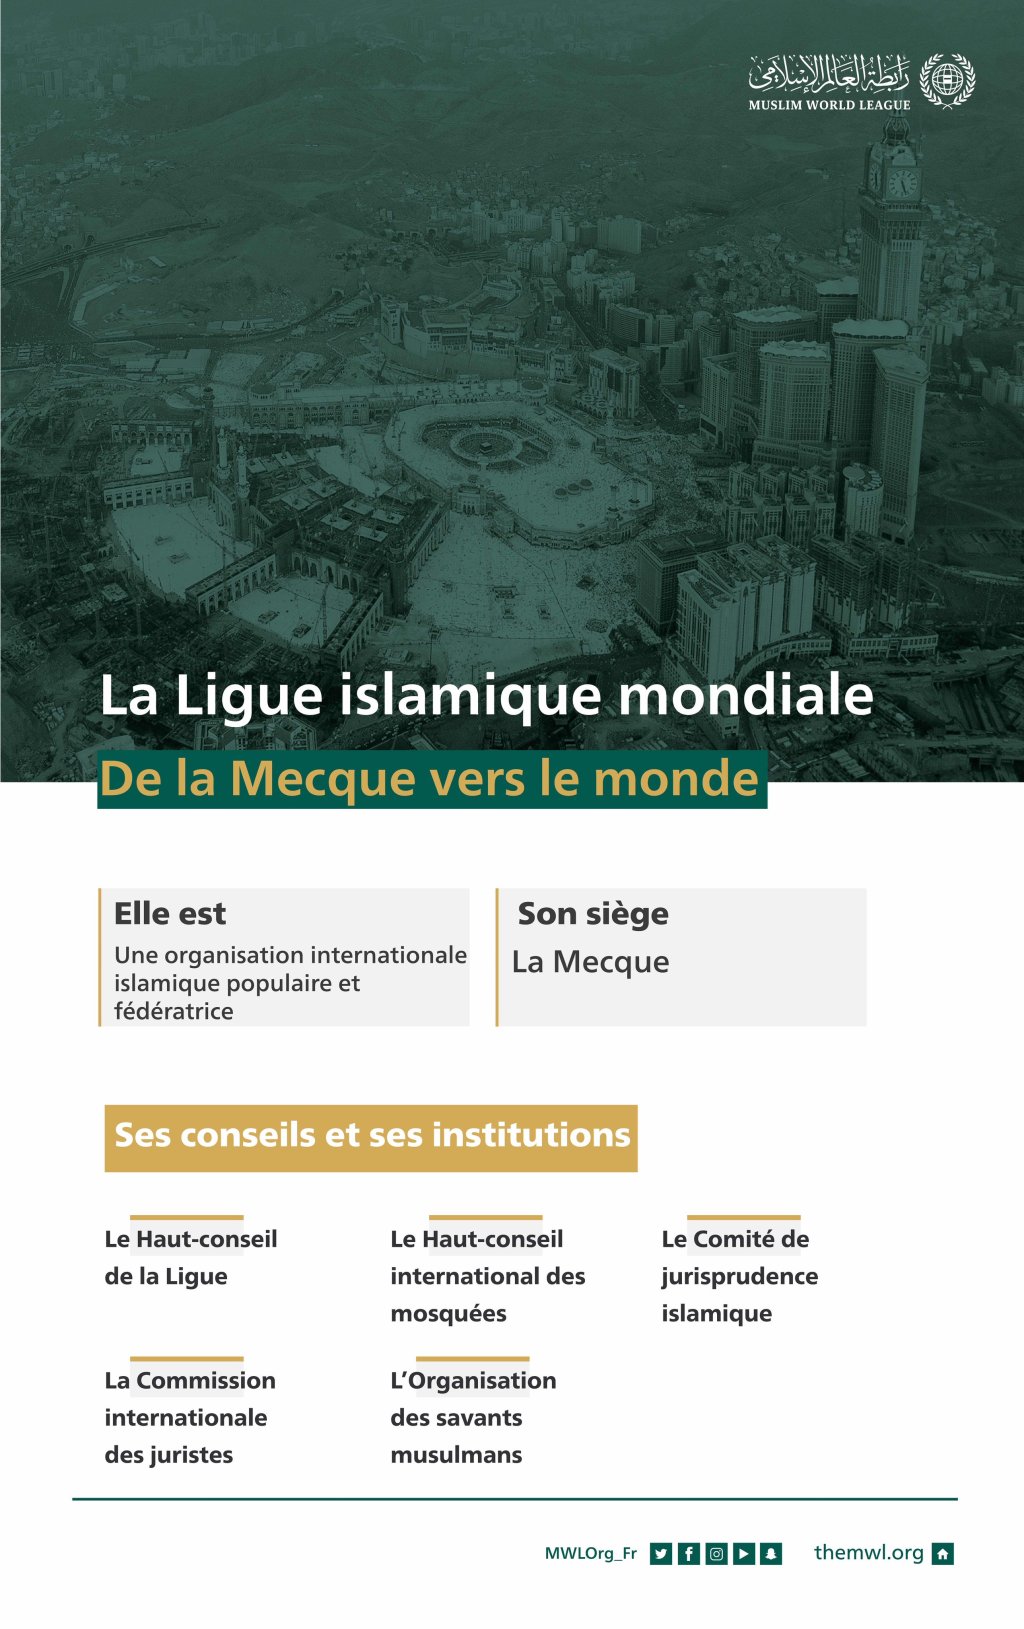 La Ligue Islamique Mondiale : une vision islamique humaniste De Mecque Vers Monde elle porte la bien et la paix pour le monde 